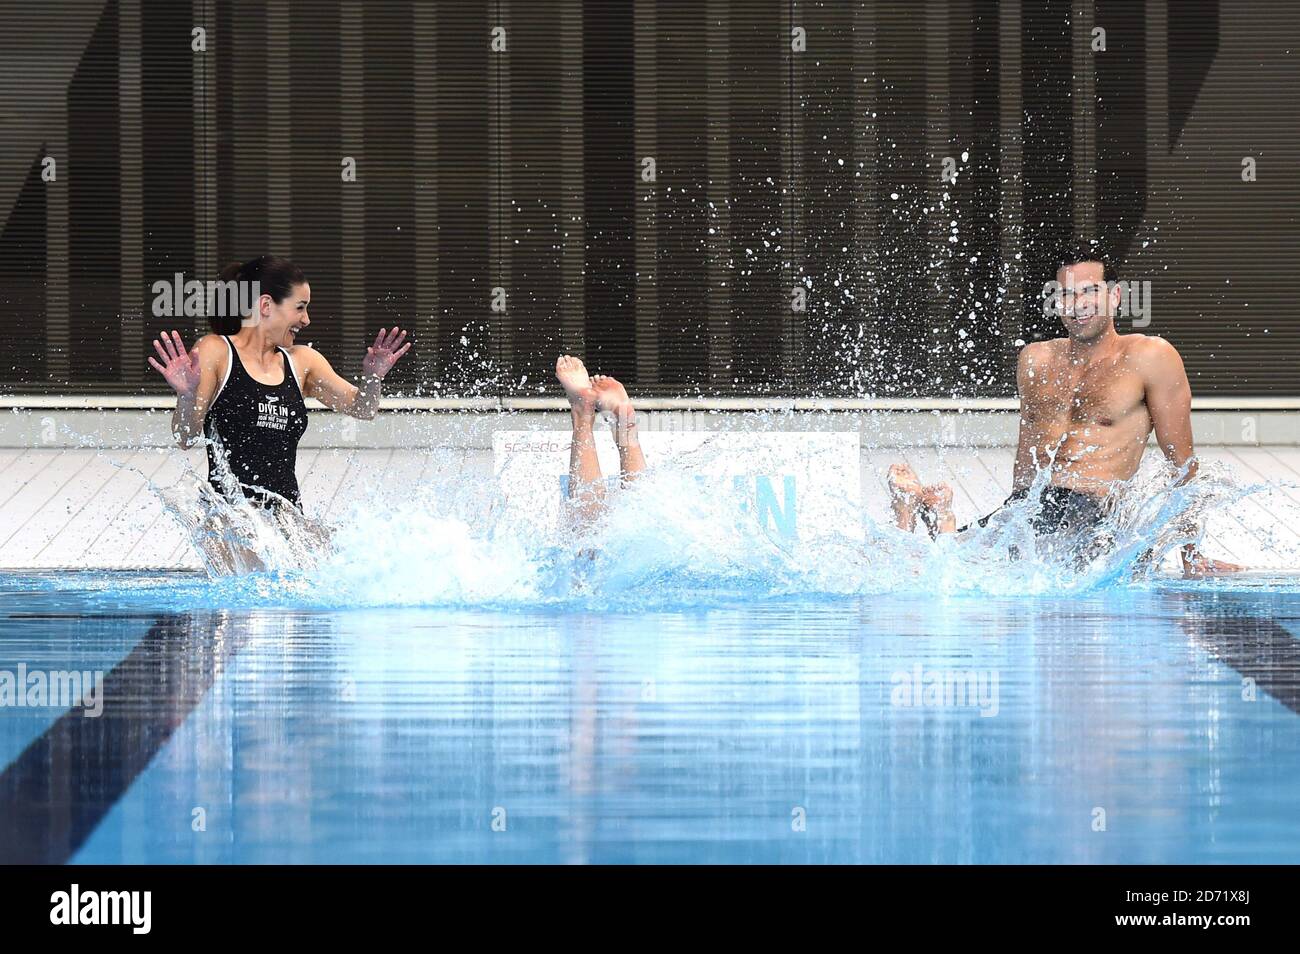 Kirsty Gallacher y Getsin Jones lanzan la campaña "vive en" de Speedo, en  el Centro acuático del Parque Olímpico de Londres, Stratford. La campaña  ofrece sesiones de natación gratuitas para ayudar a